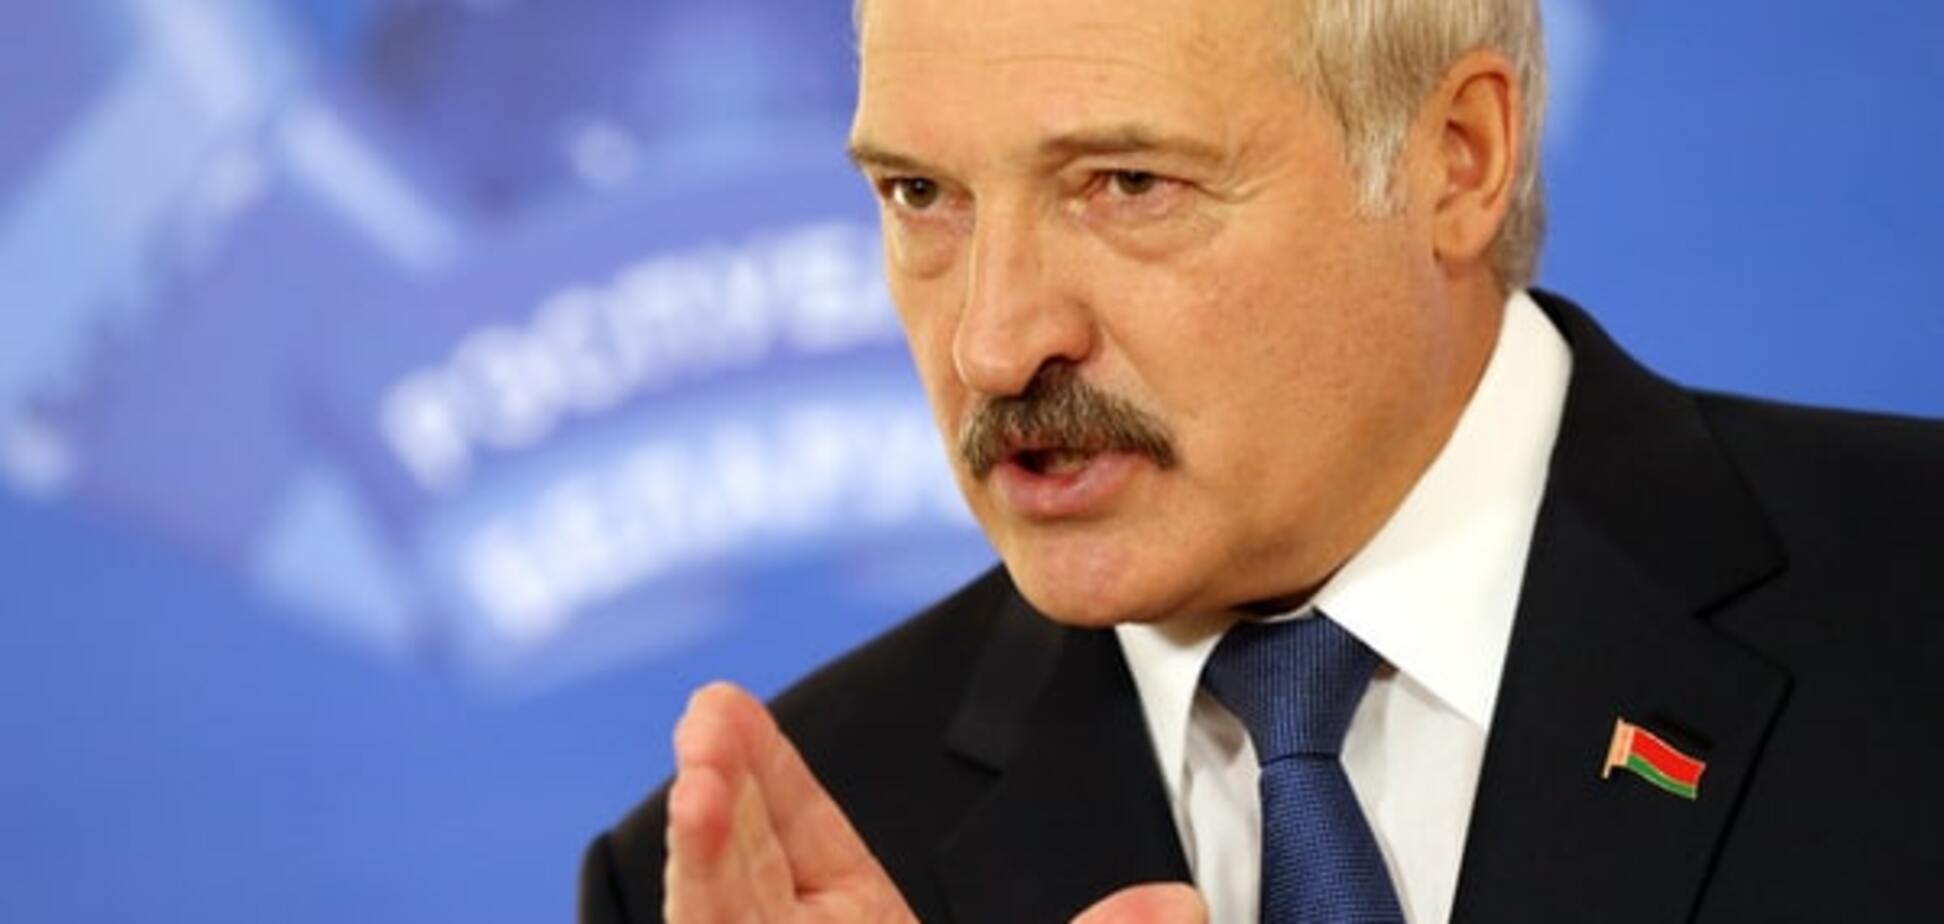 Політичні імпотенти: Лукашенко натякнув, що думає про СНД